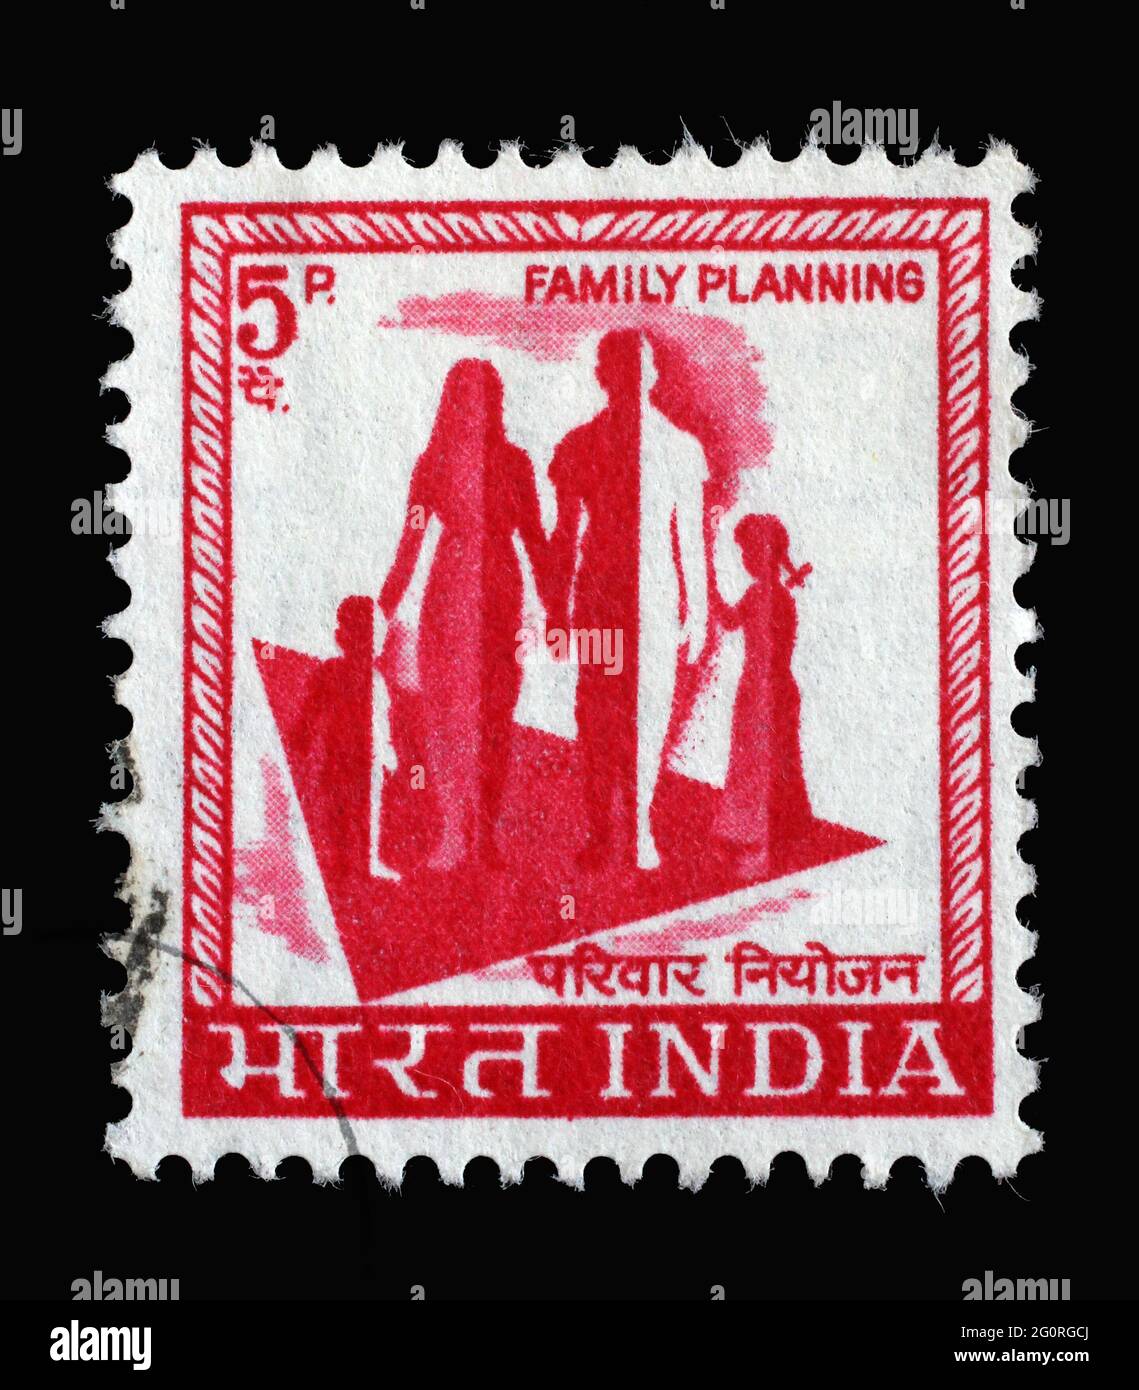 Stempel in Indien zeigt Silhouette einer Familie zum Gedenken an die Familienplanungskampagne, um 1967 Stockfoto